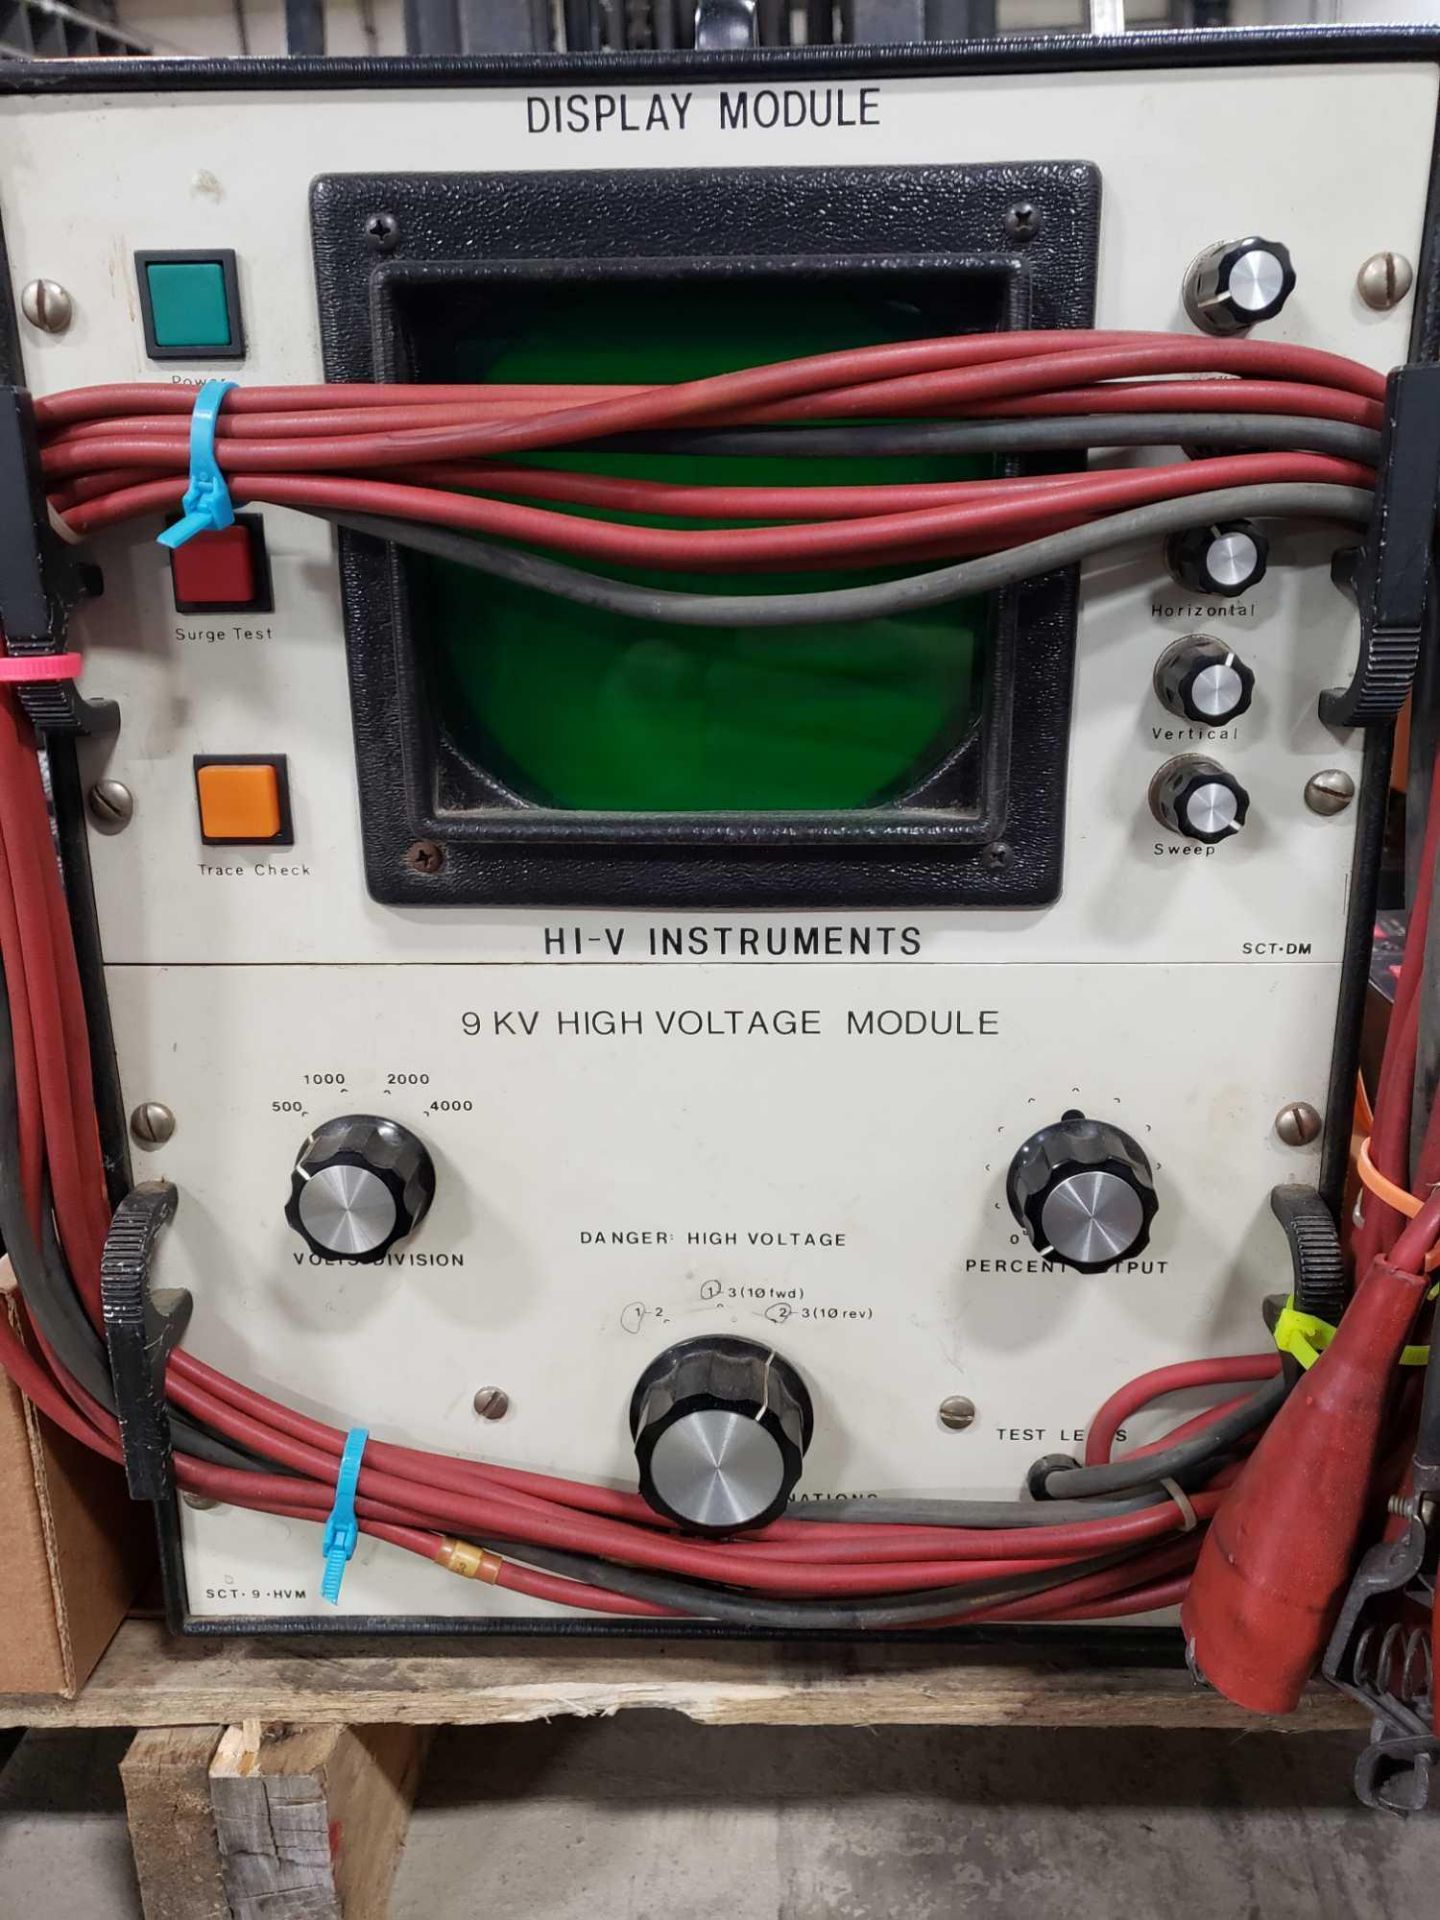 Hi-V instruments model SCT-9-HVM tester. - Image 2 of 5